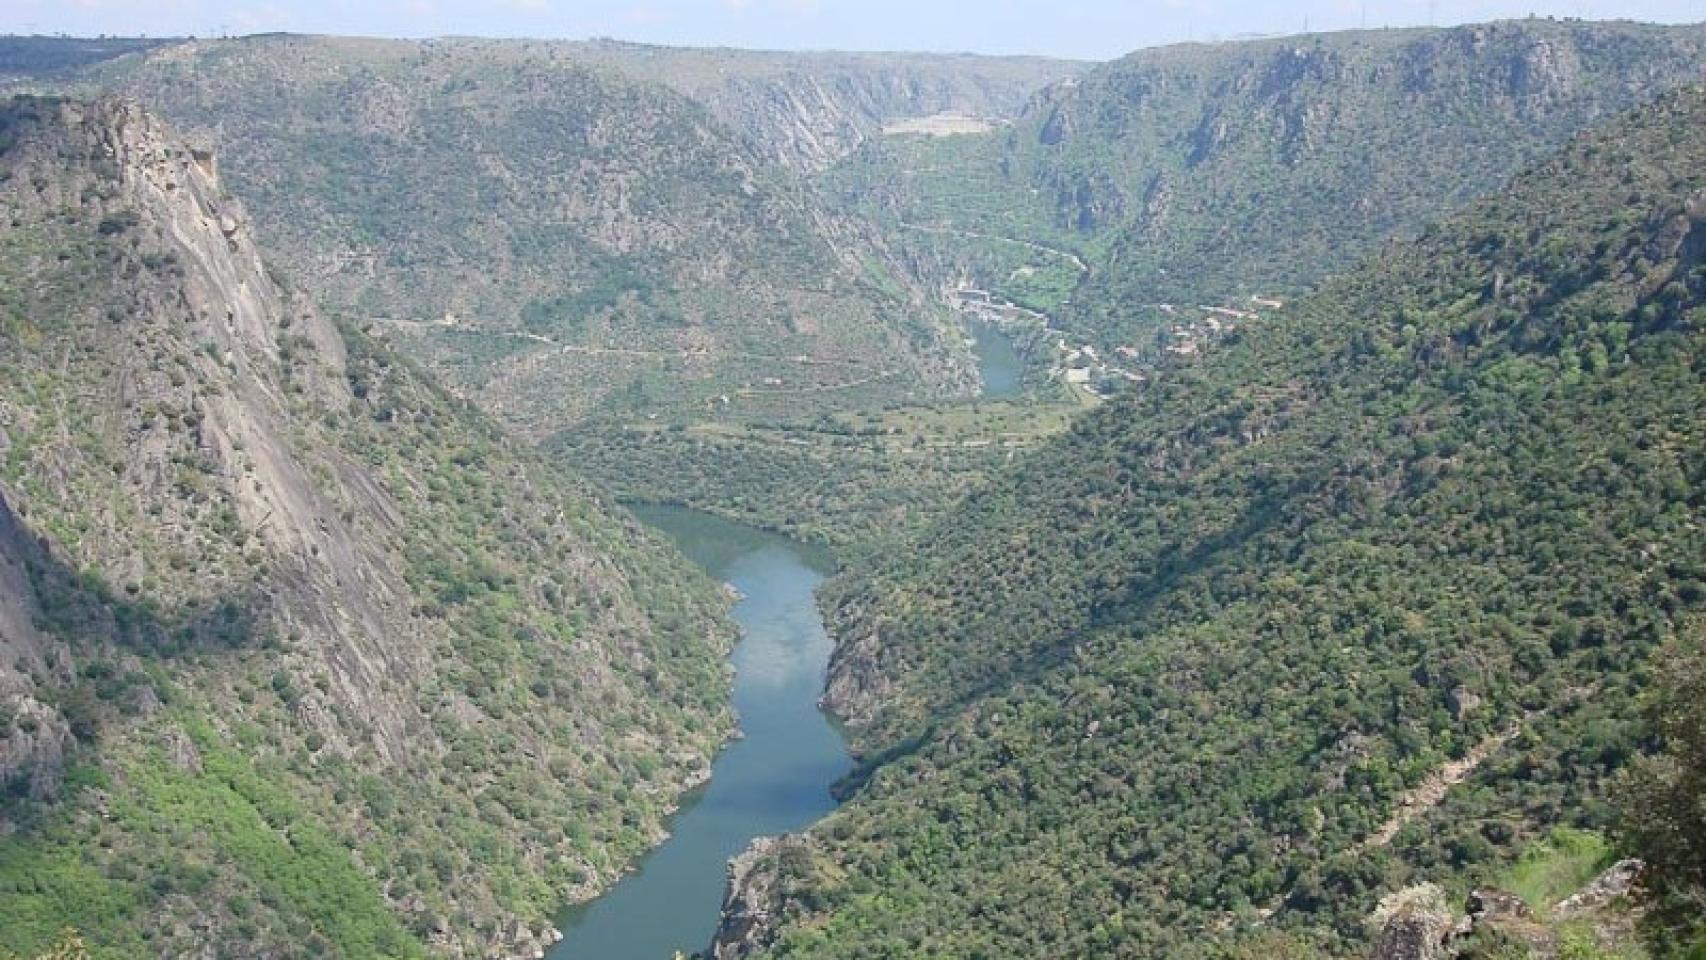 Espectacular vista del río Duero desde el mirador de La Code en Mieza